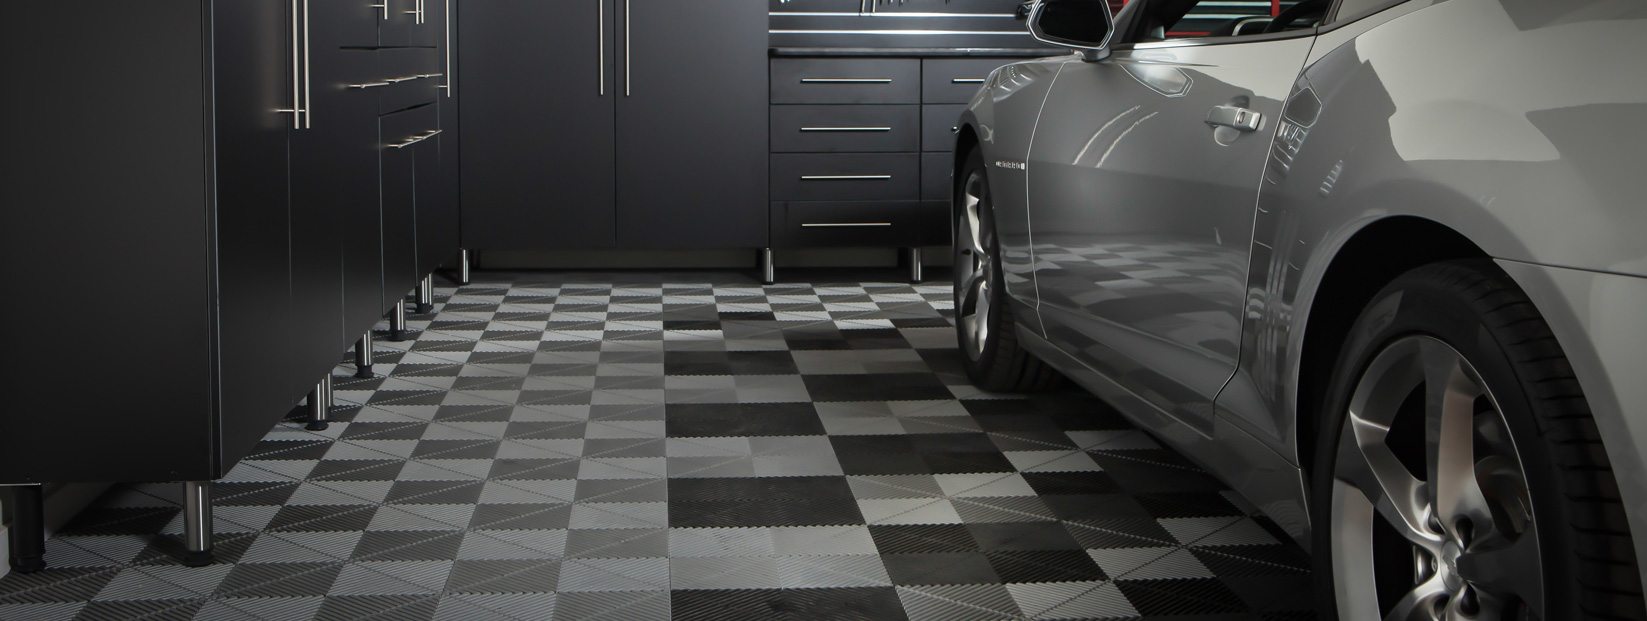 Garage Floor Tiles Wausau